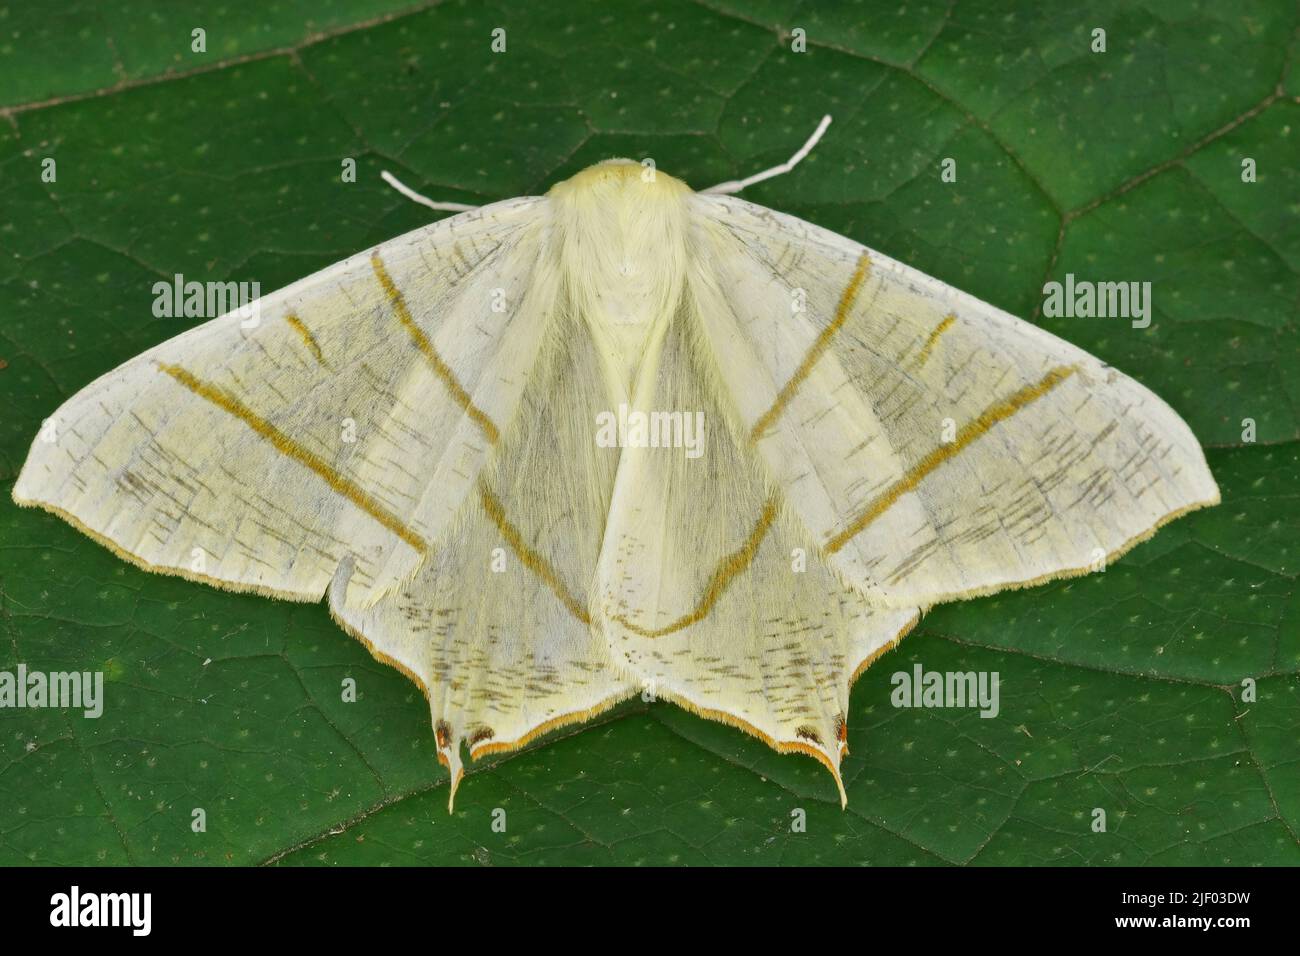 Gros plan sur un papillon jaune clair, Ourapteryx sambucaria avec ailes ouvertes sur une feuille verte dans le jardin Banque D'Images